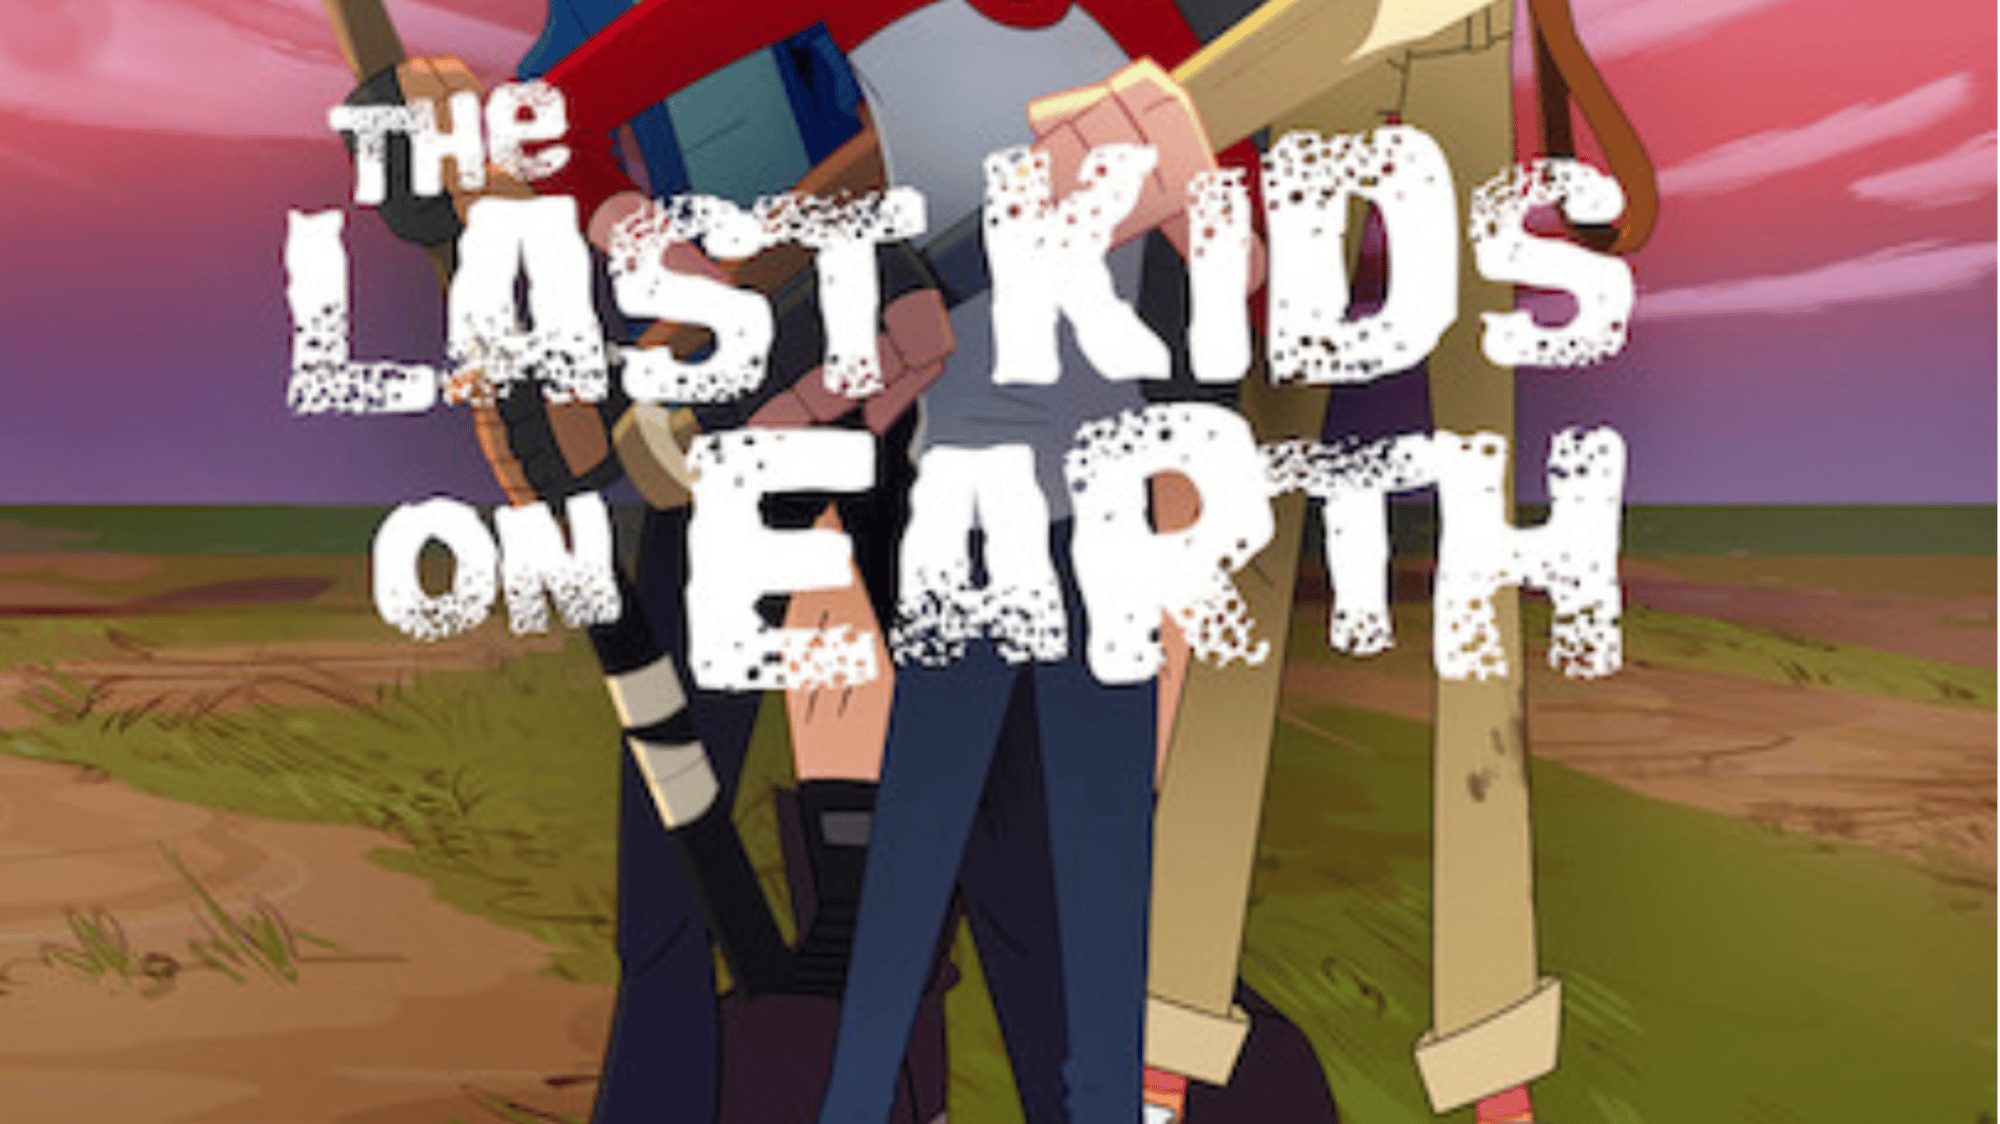 The Last Kids on Earth.